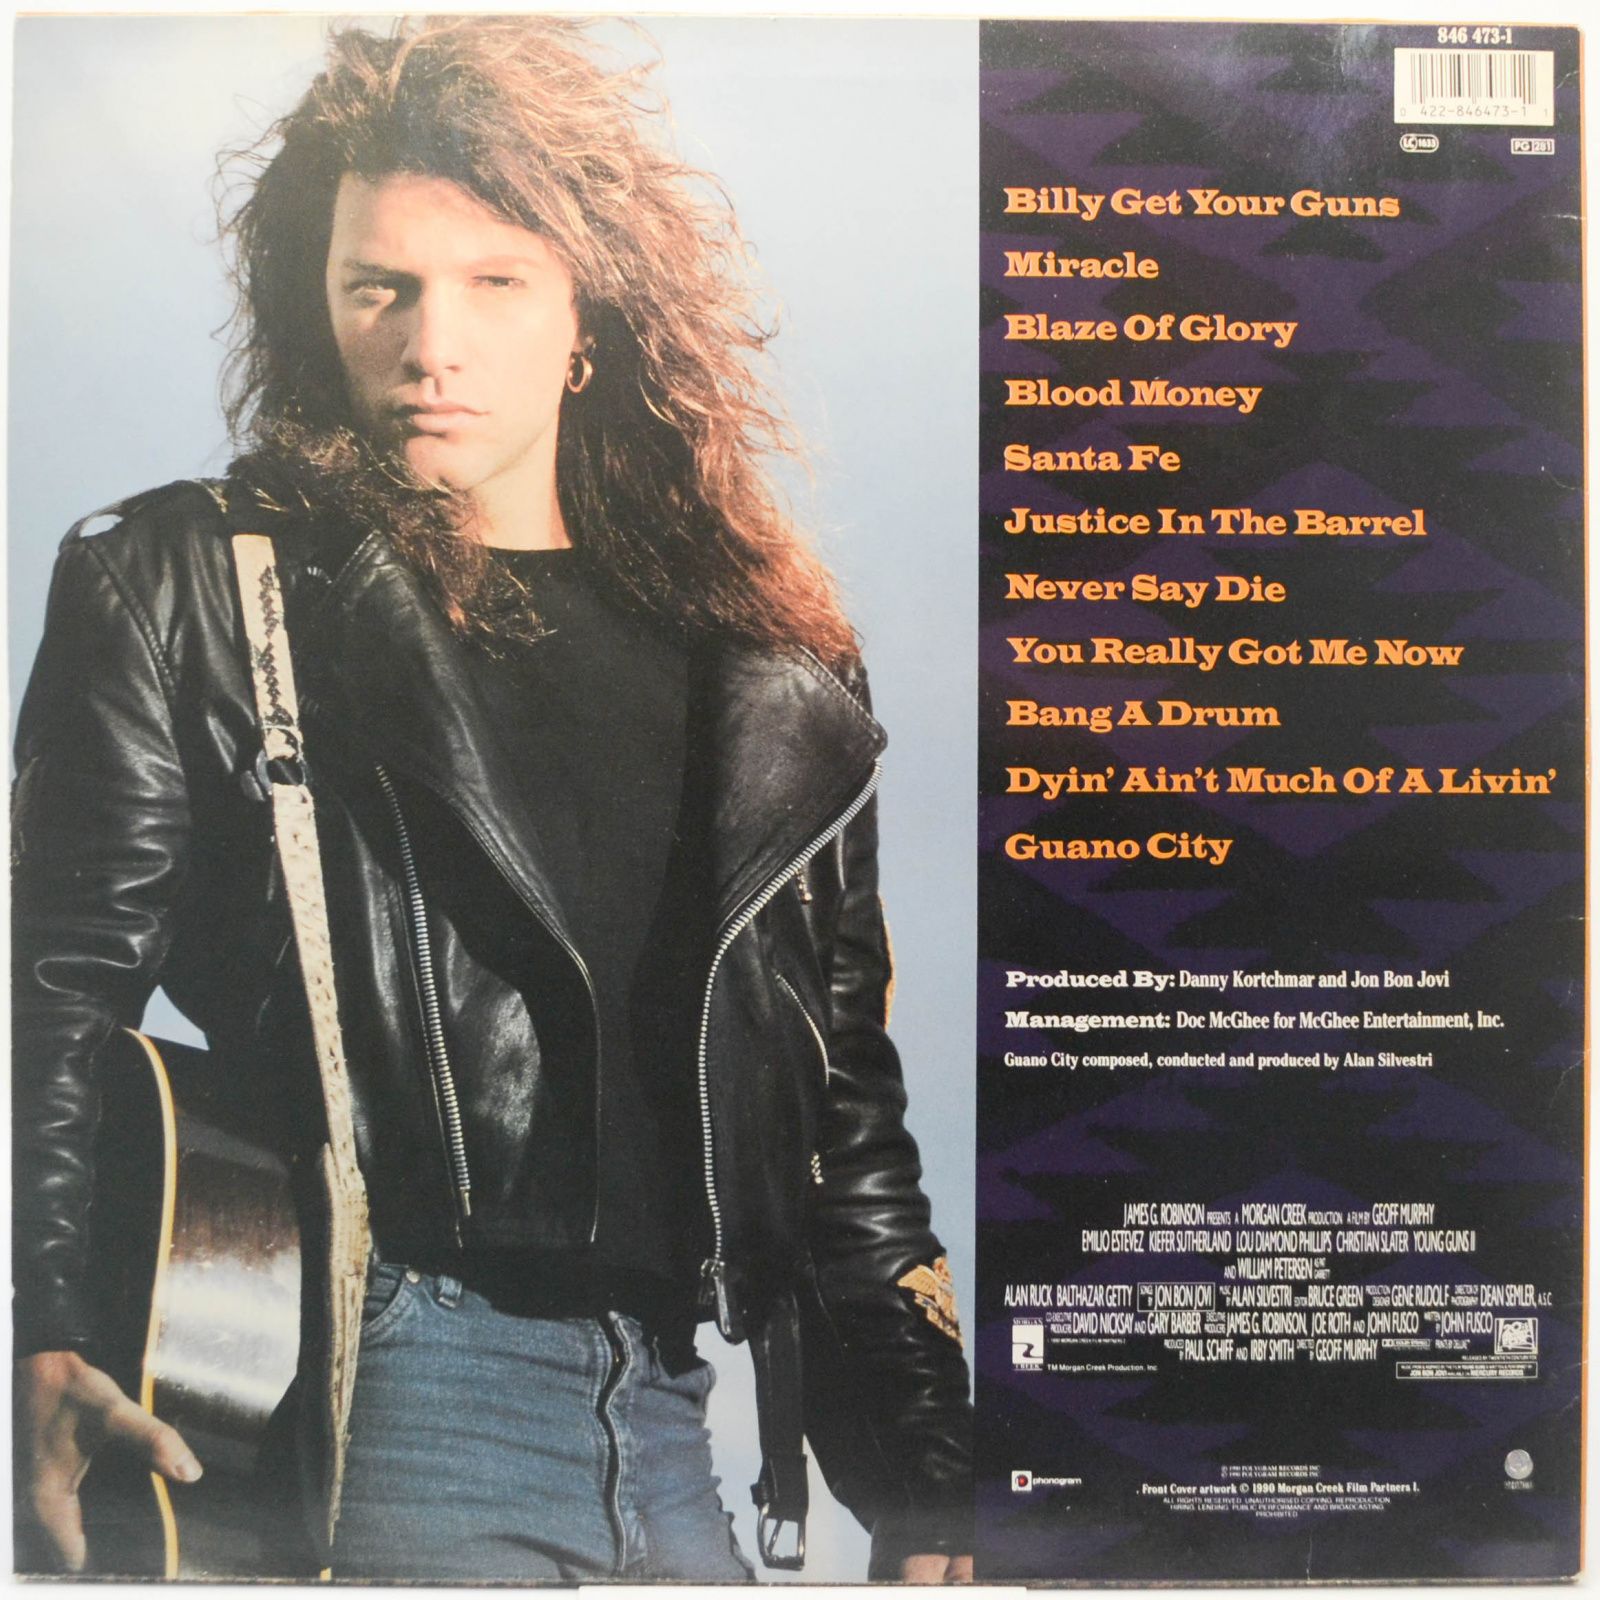 Jon Bon Jovi — Blaze Of Glory, 1990